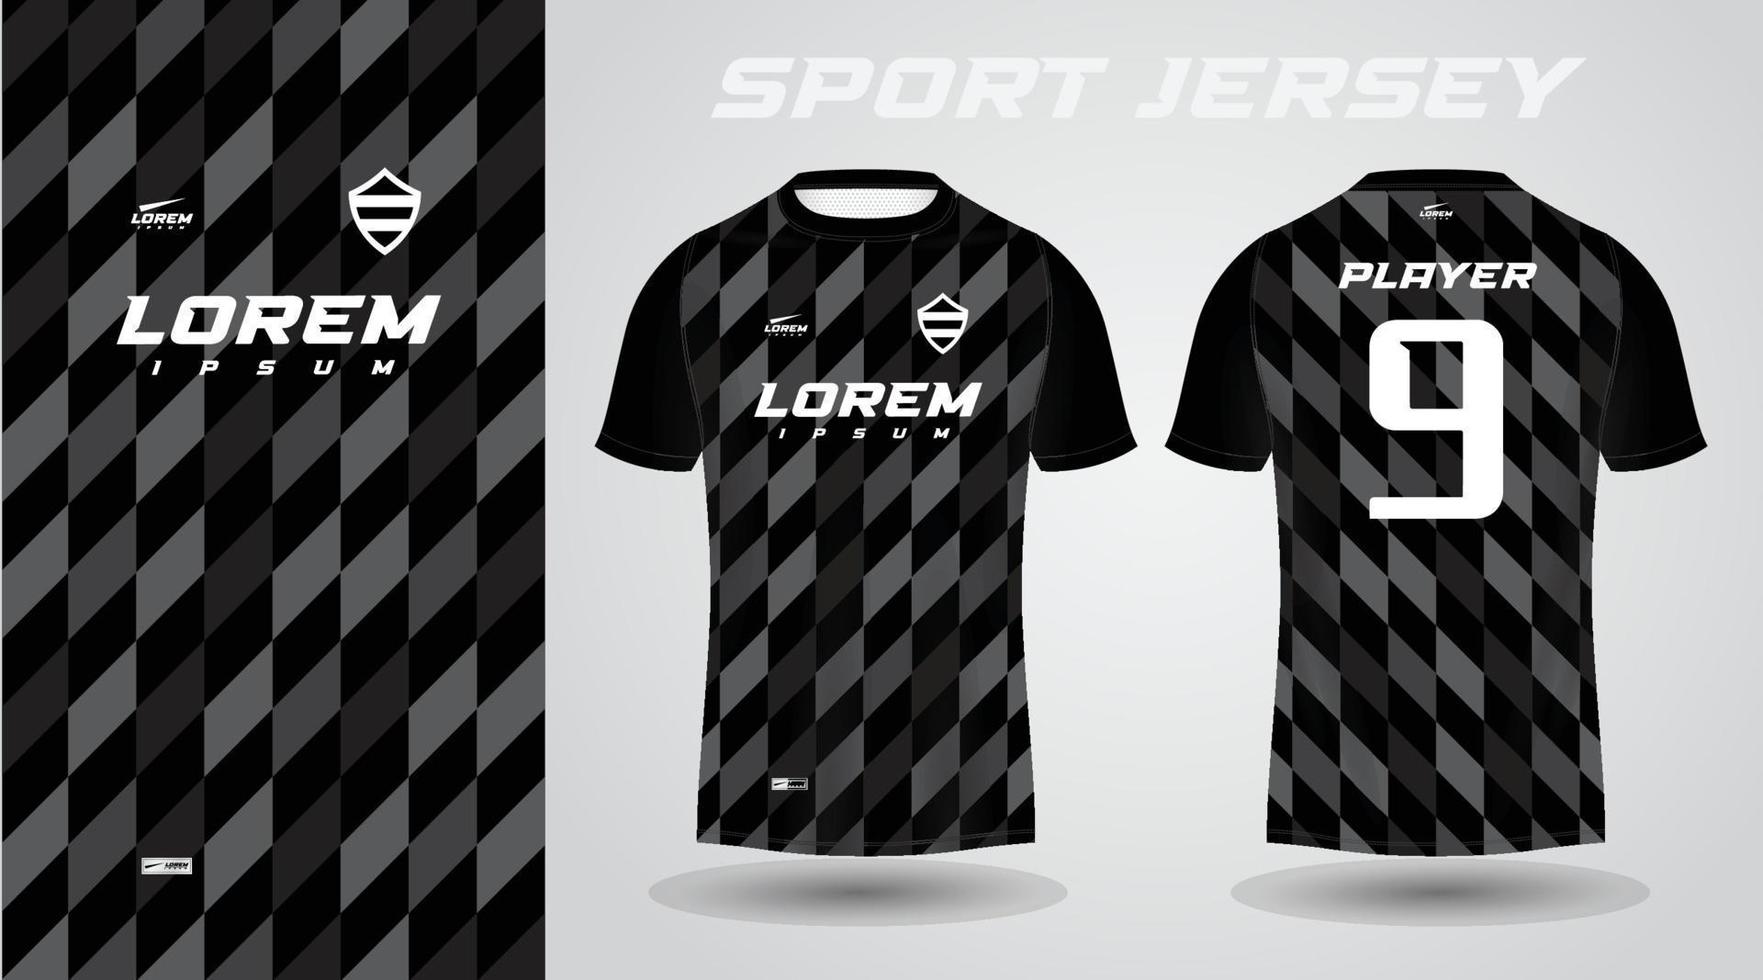 black t-shirt sport jersey design vector